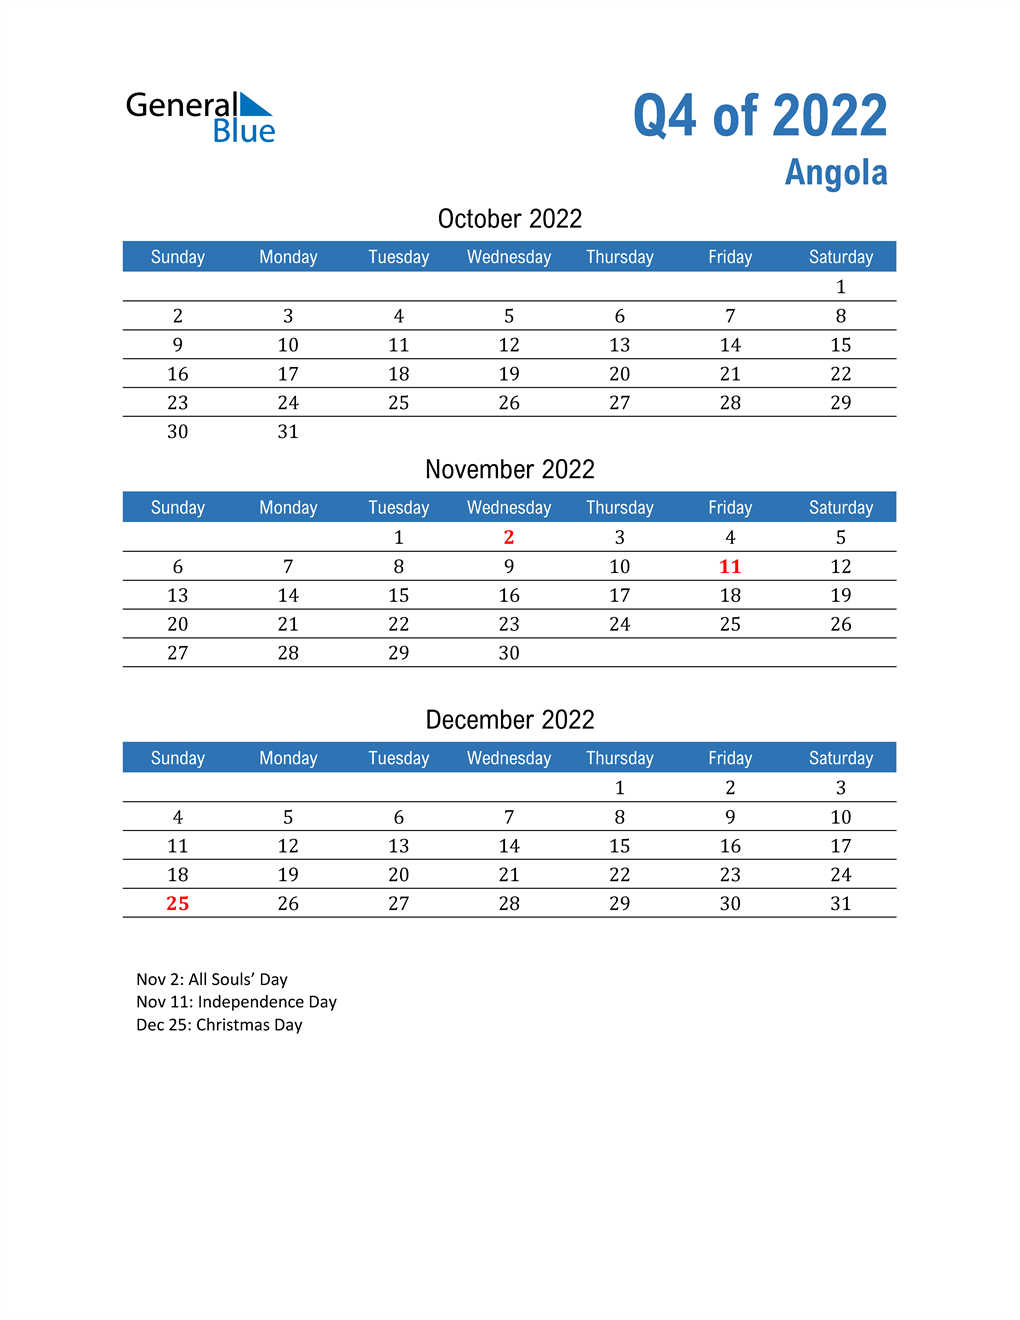  Angola 2022 Quarterly Calendar 